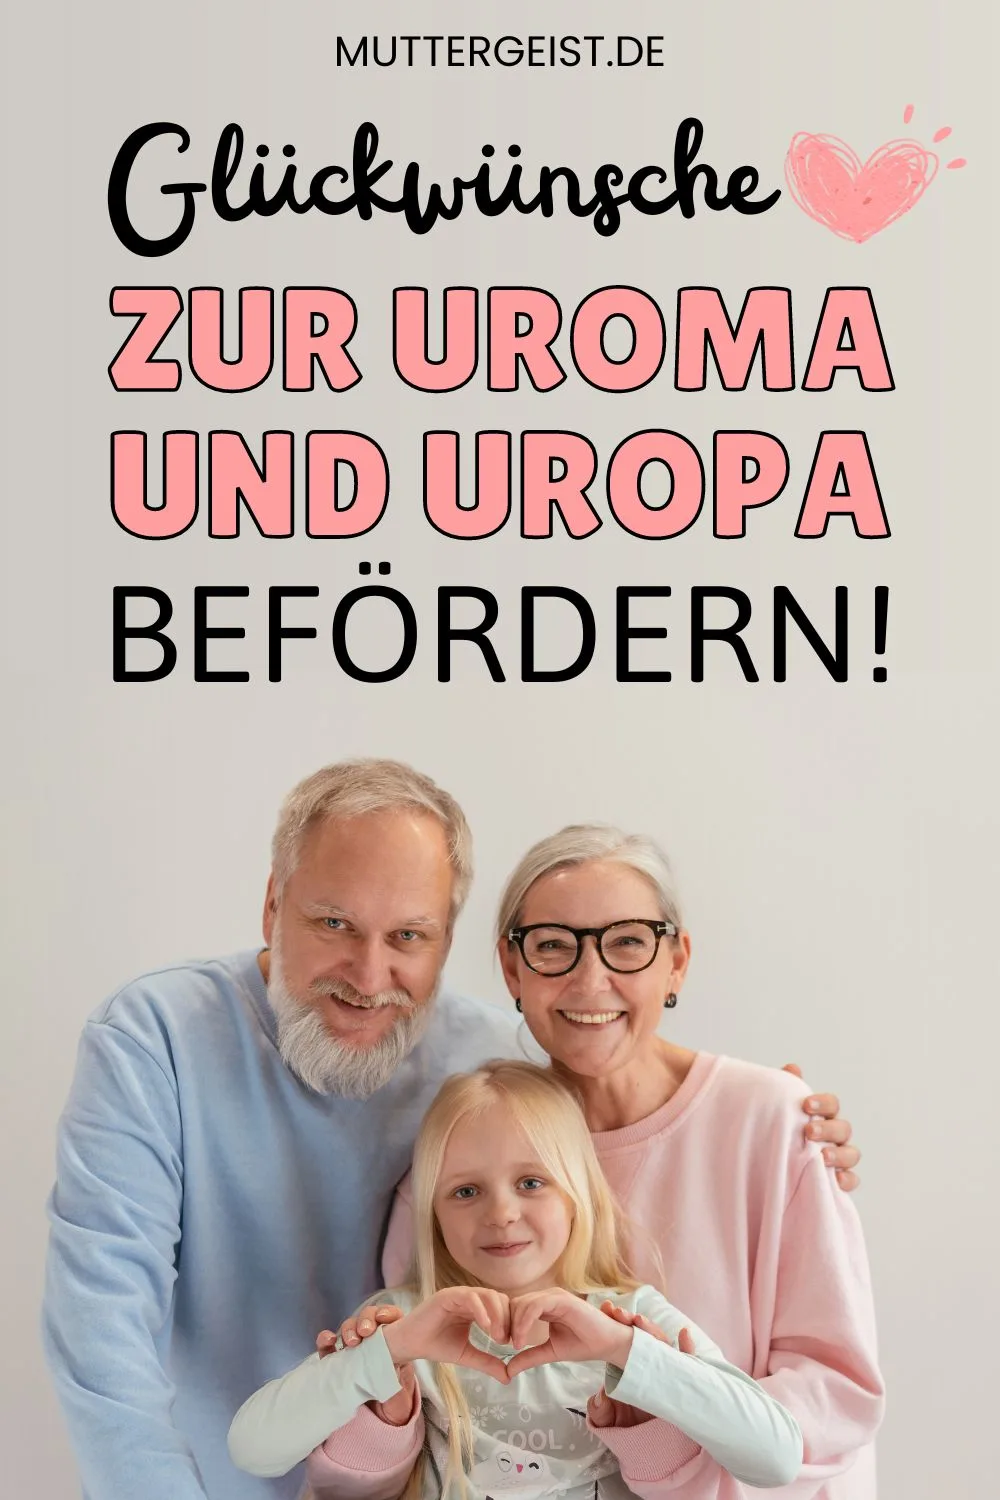 Glückwünsche zur Uroma und Uropa befördern! Pinterest